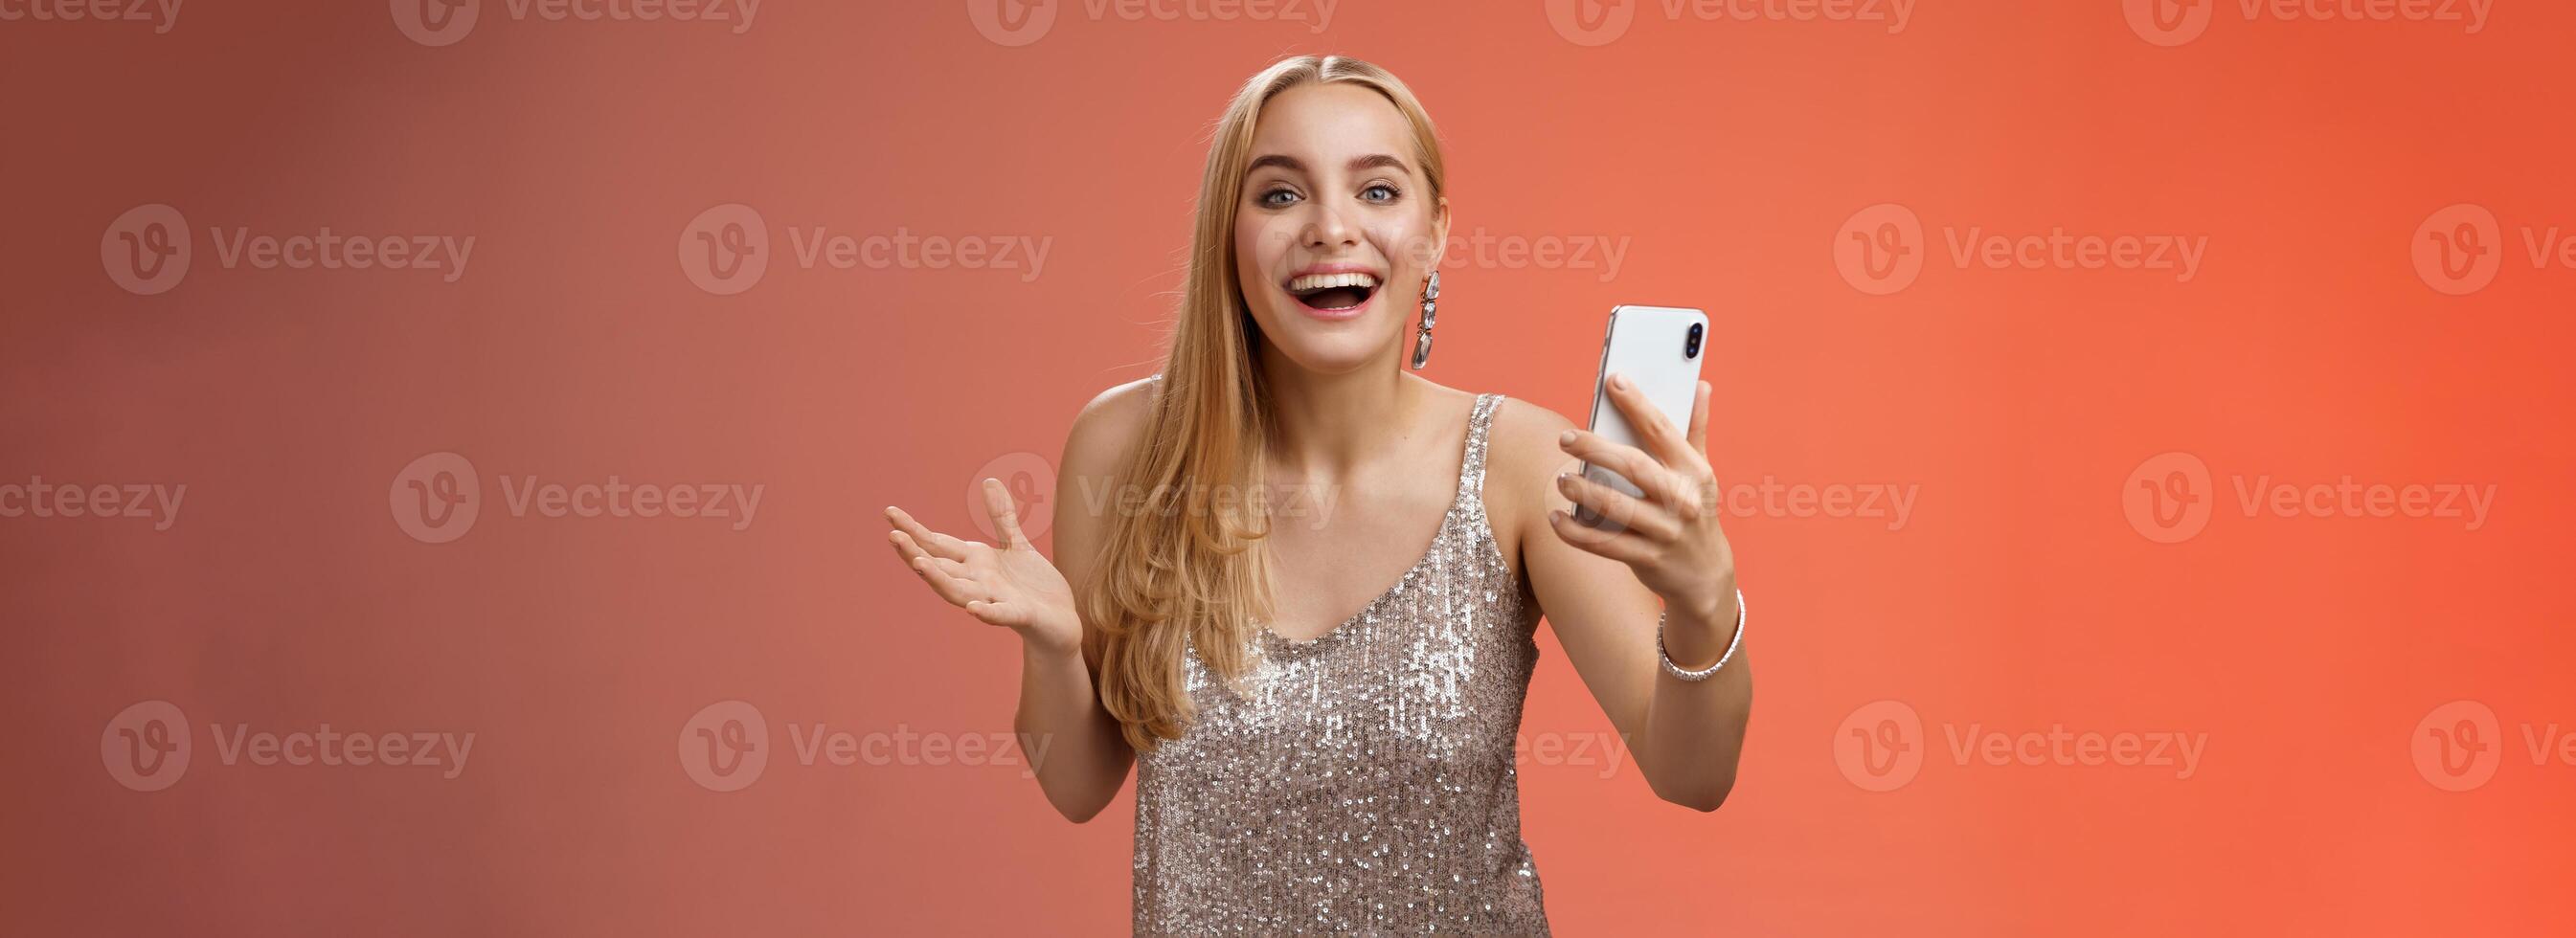 erstaunt glücklich charmant blond Mädchen im Silber glänzend stilvoll Kleid halten Smartphone erstaunt Geschmack genial Ergebnis bearbeiten Foto App lächelnd wunderte sich amüsiert, Stehen rot Hintergrund